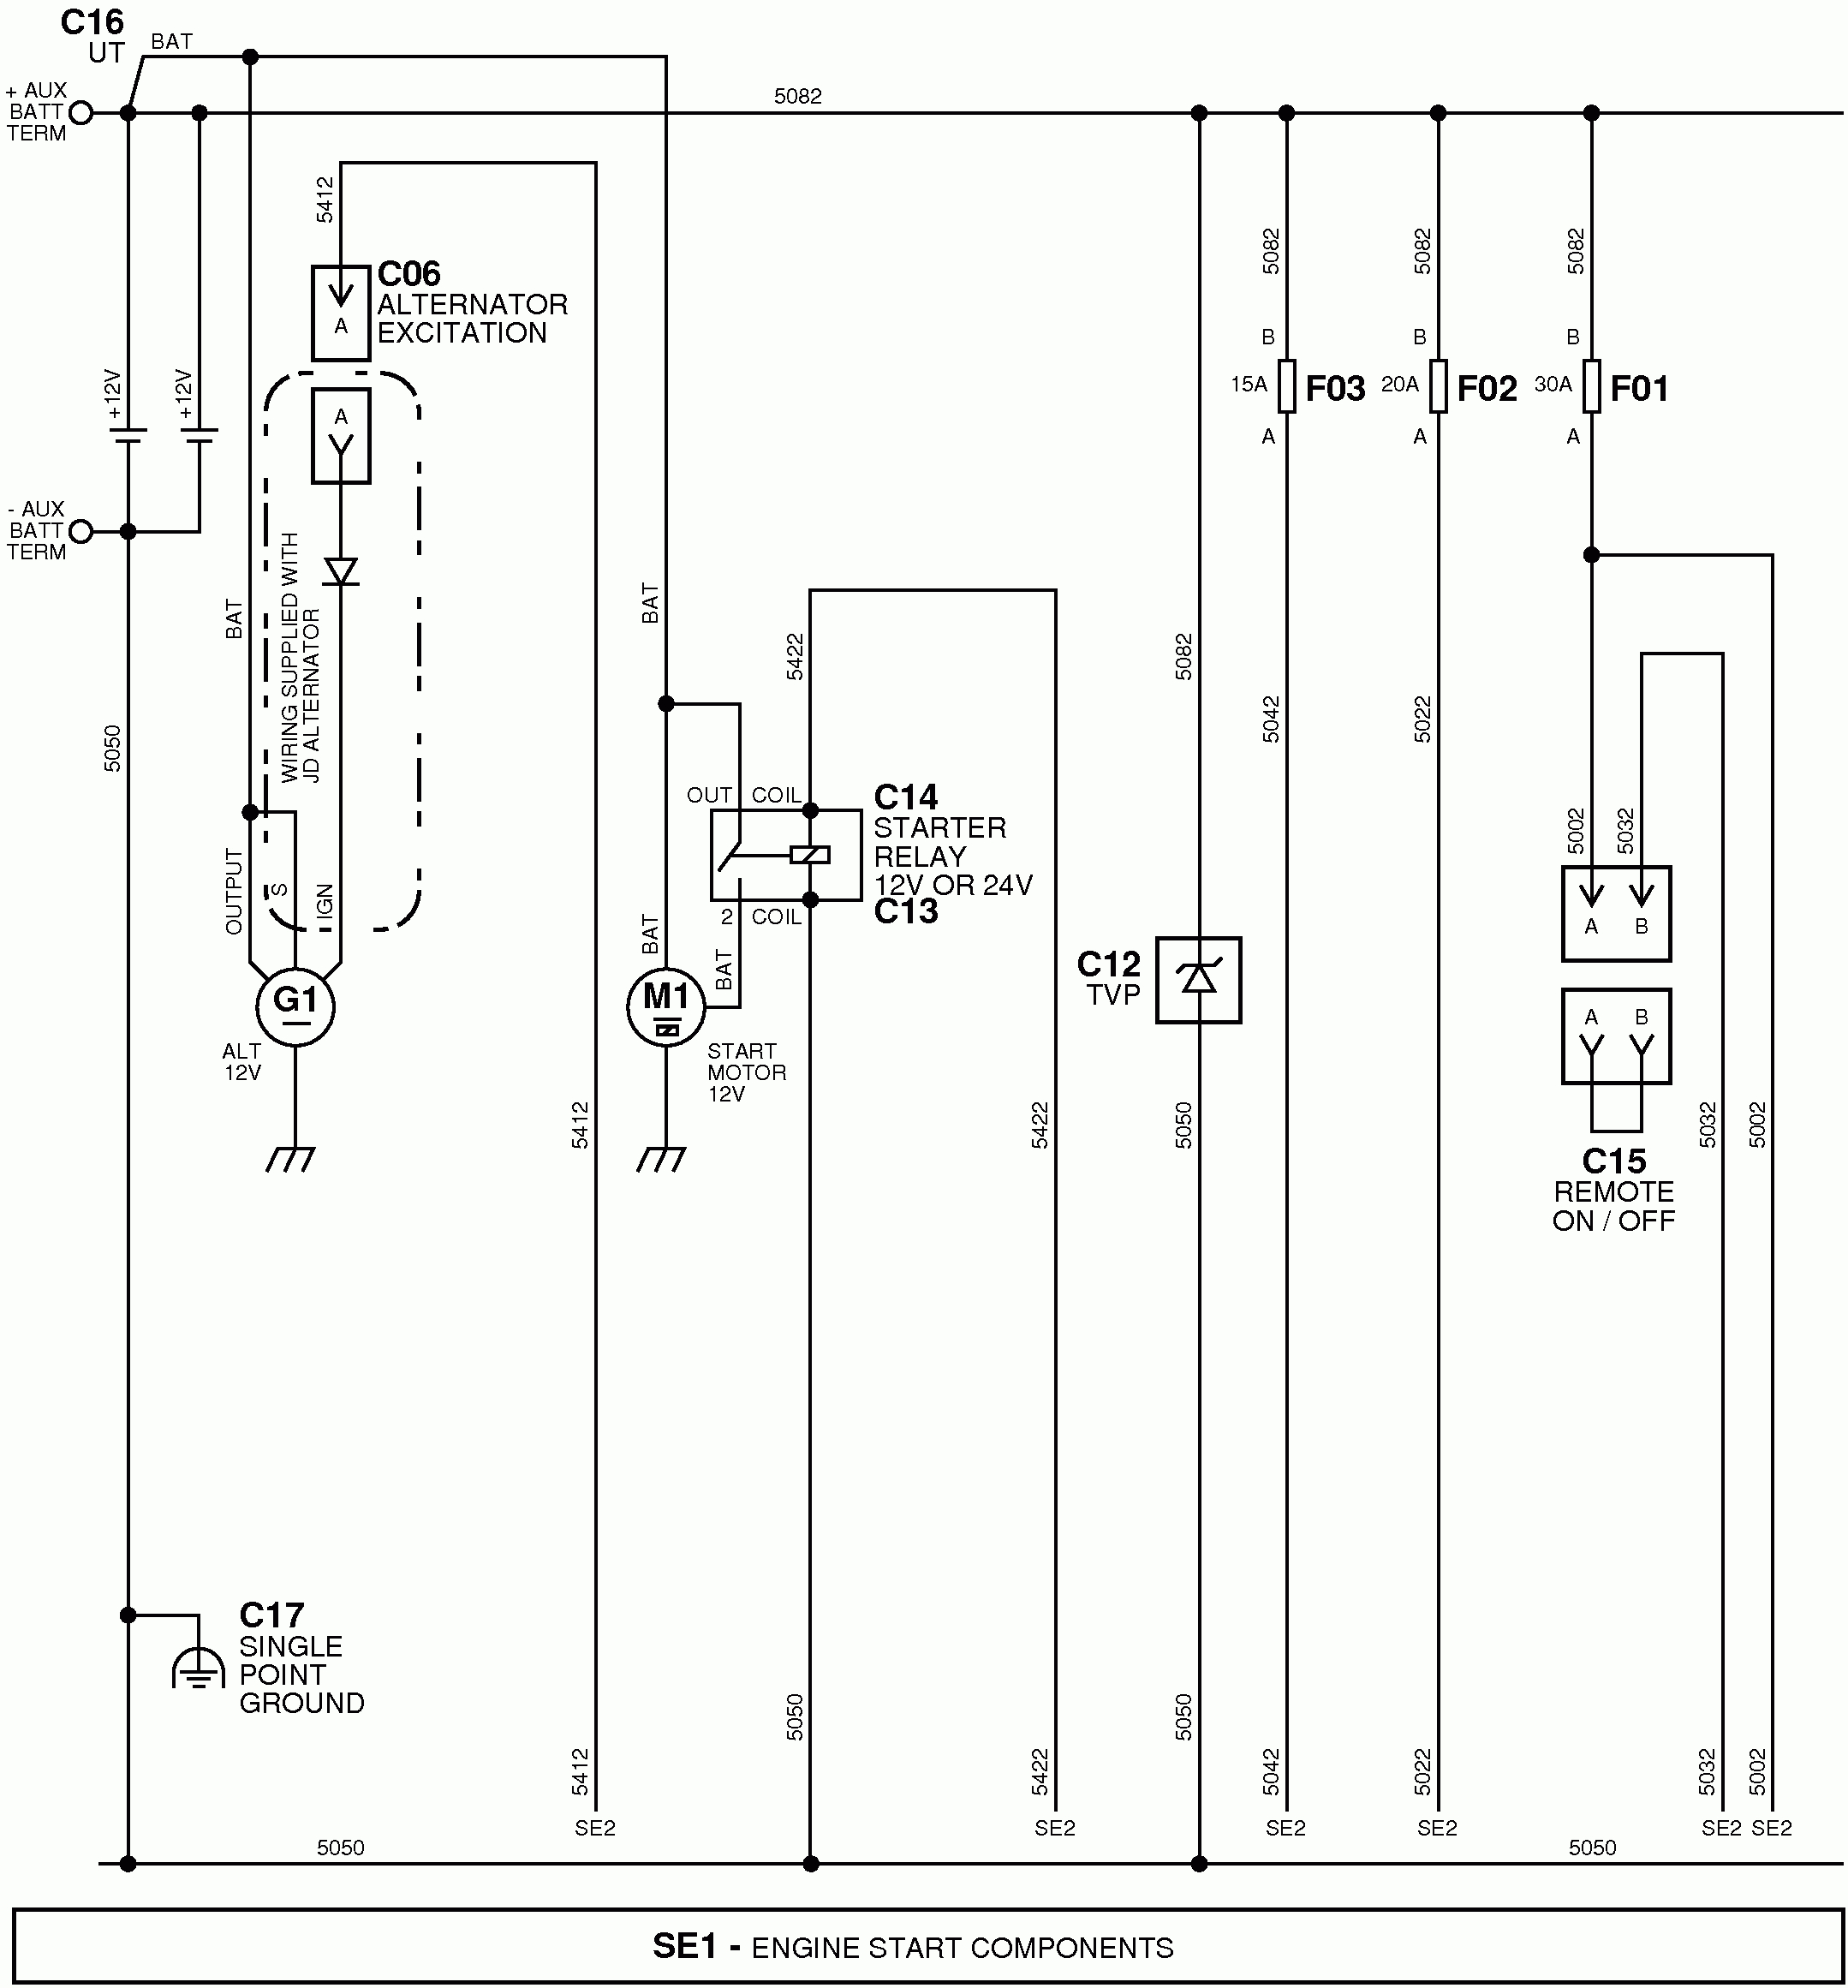 Lt133 Wiring Diagram | Wiring Library - John Deere Lt133 Wiring Diagram